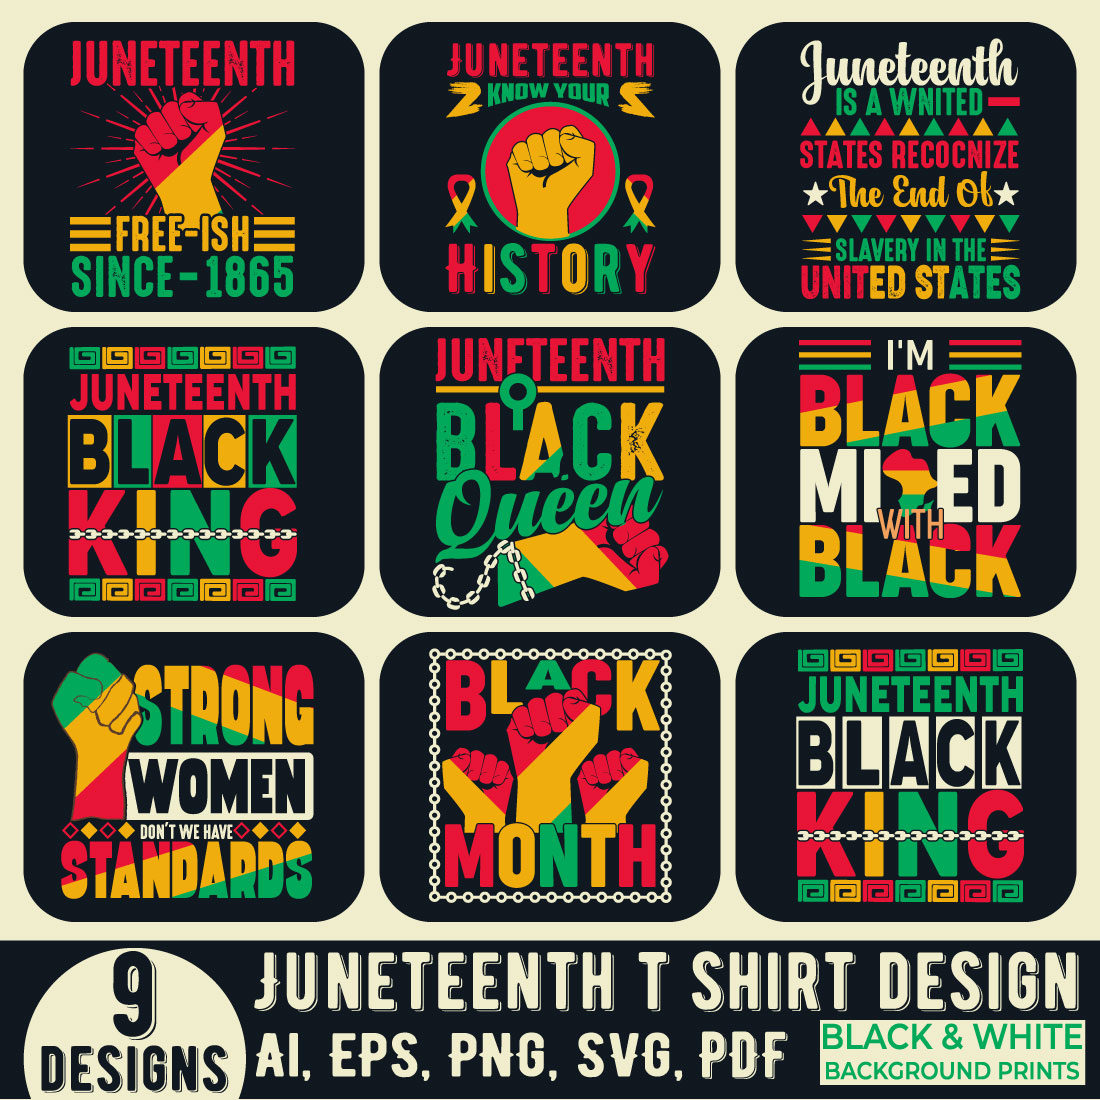 A black history t-shirt design bundle celebrating Juneteenth cover image.